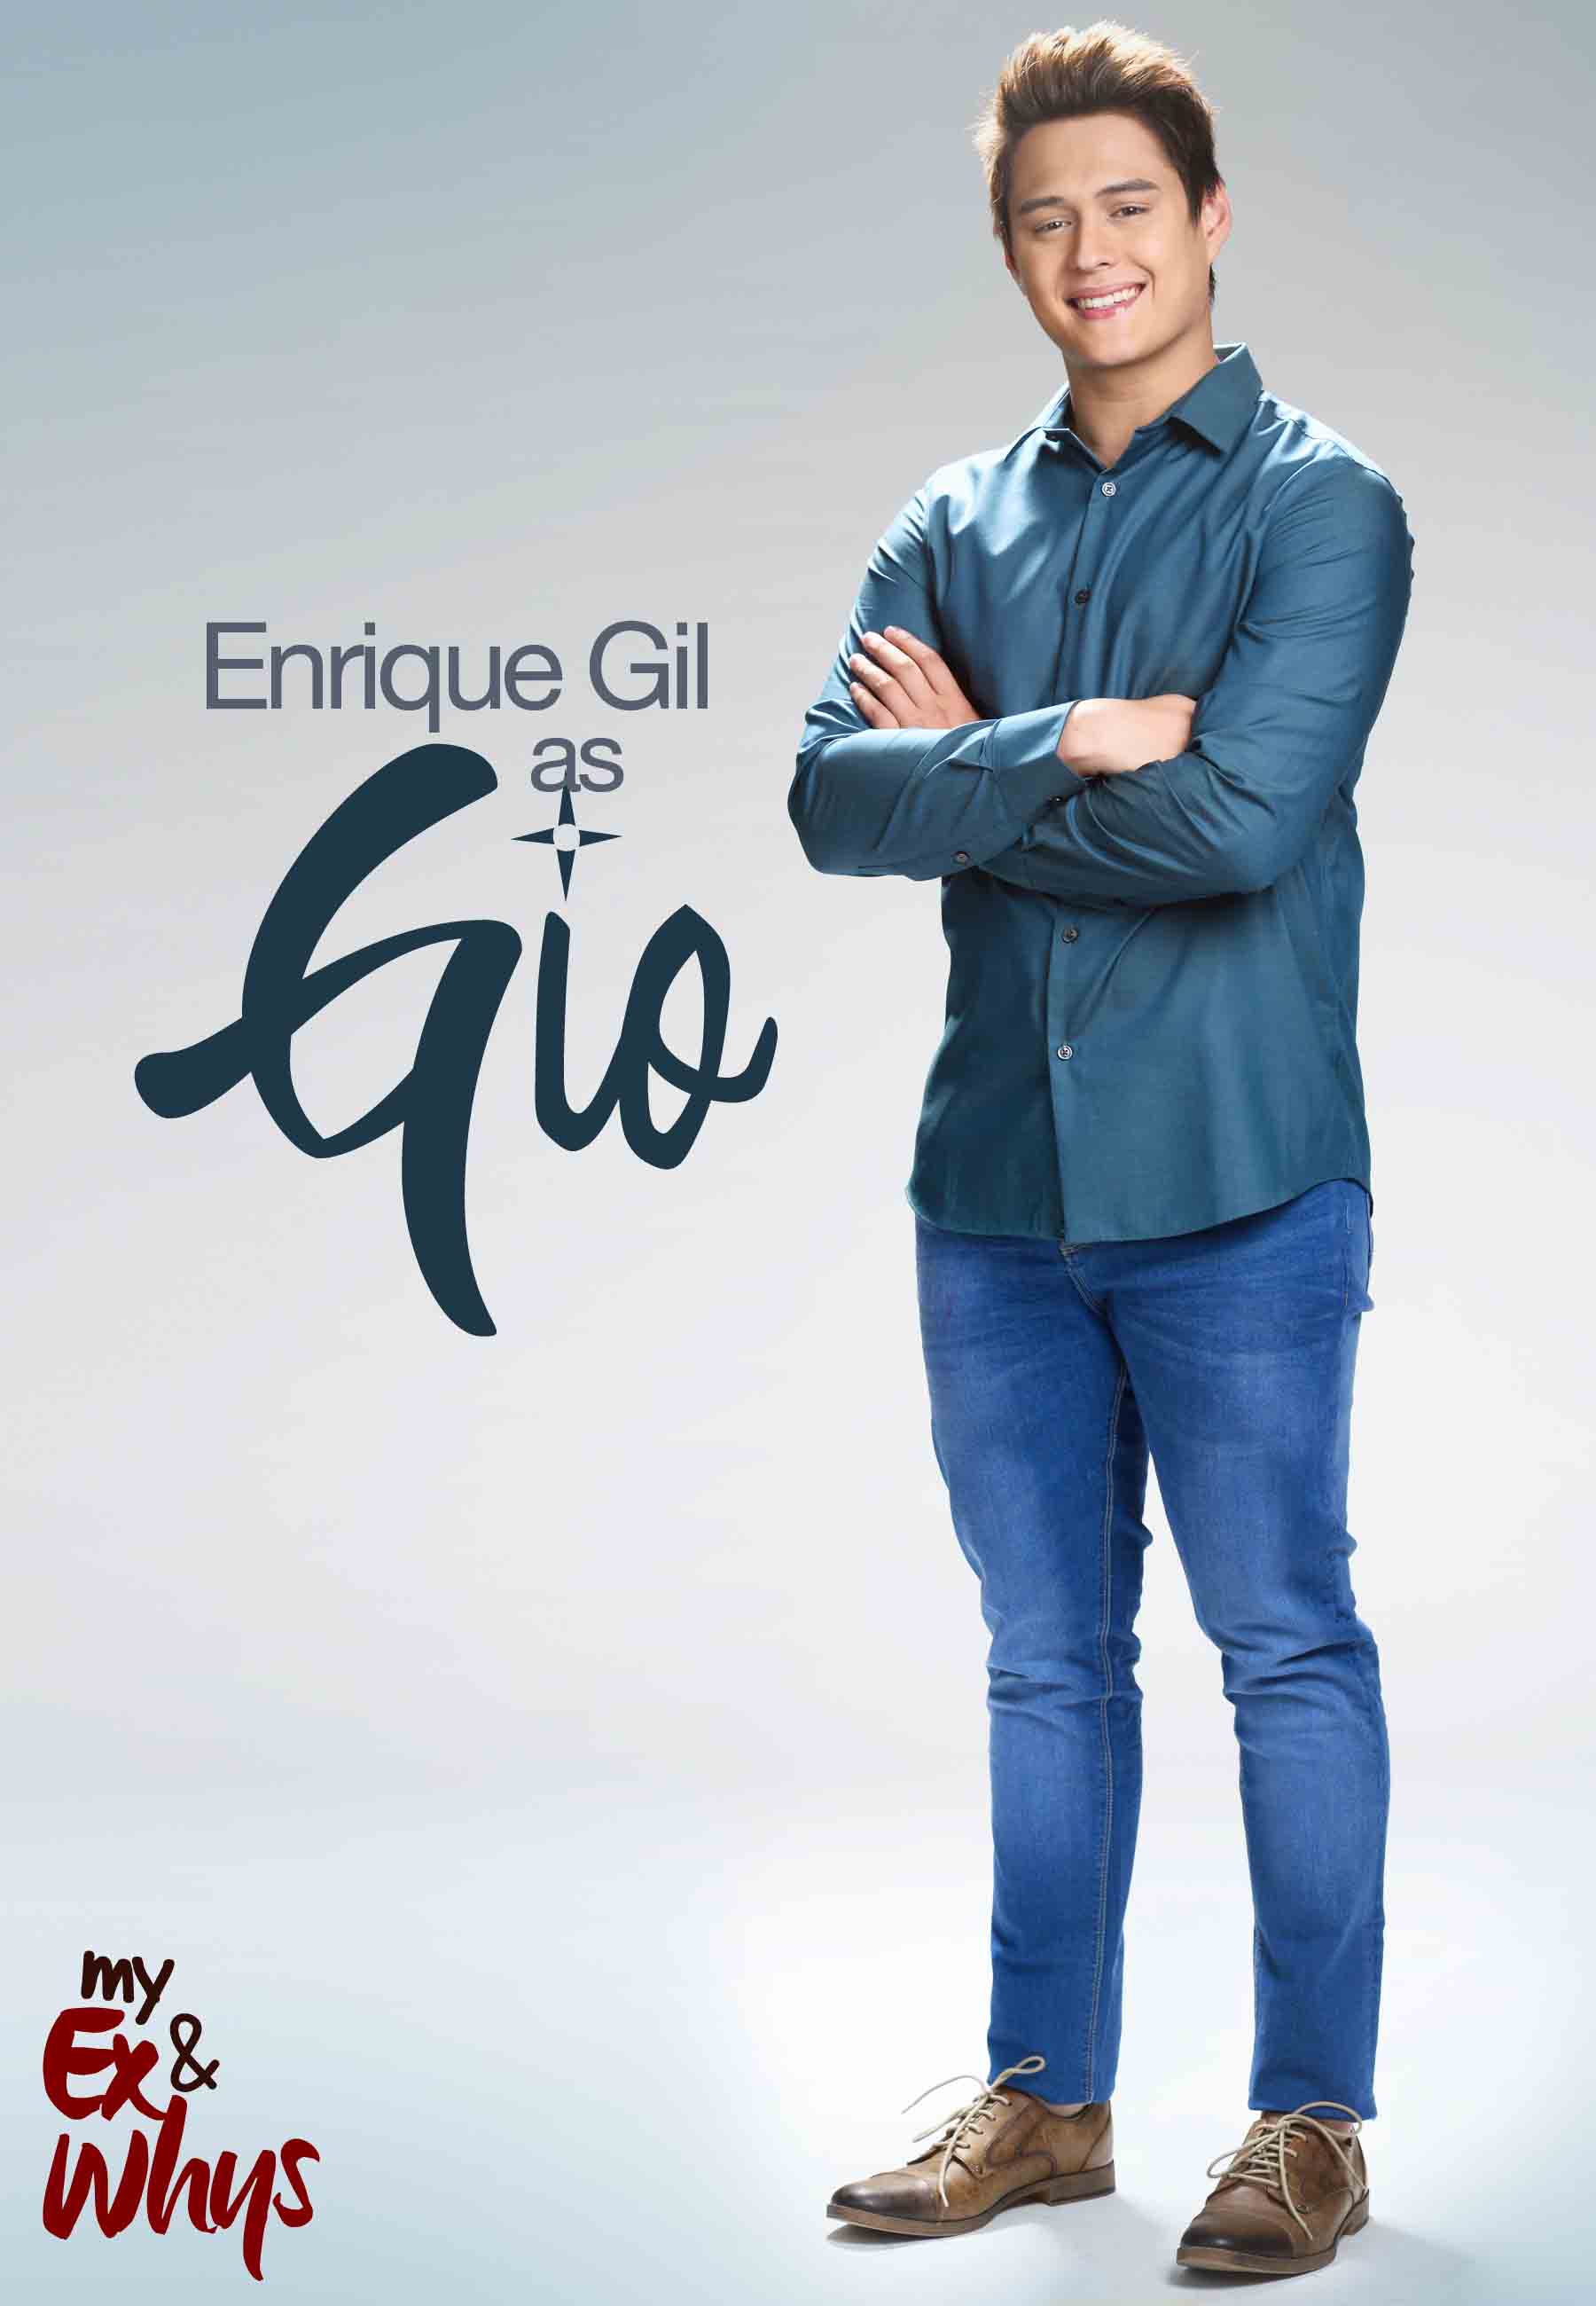 Enrique Gil